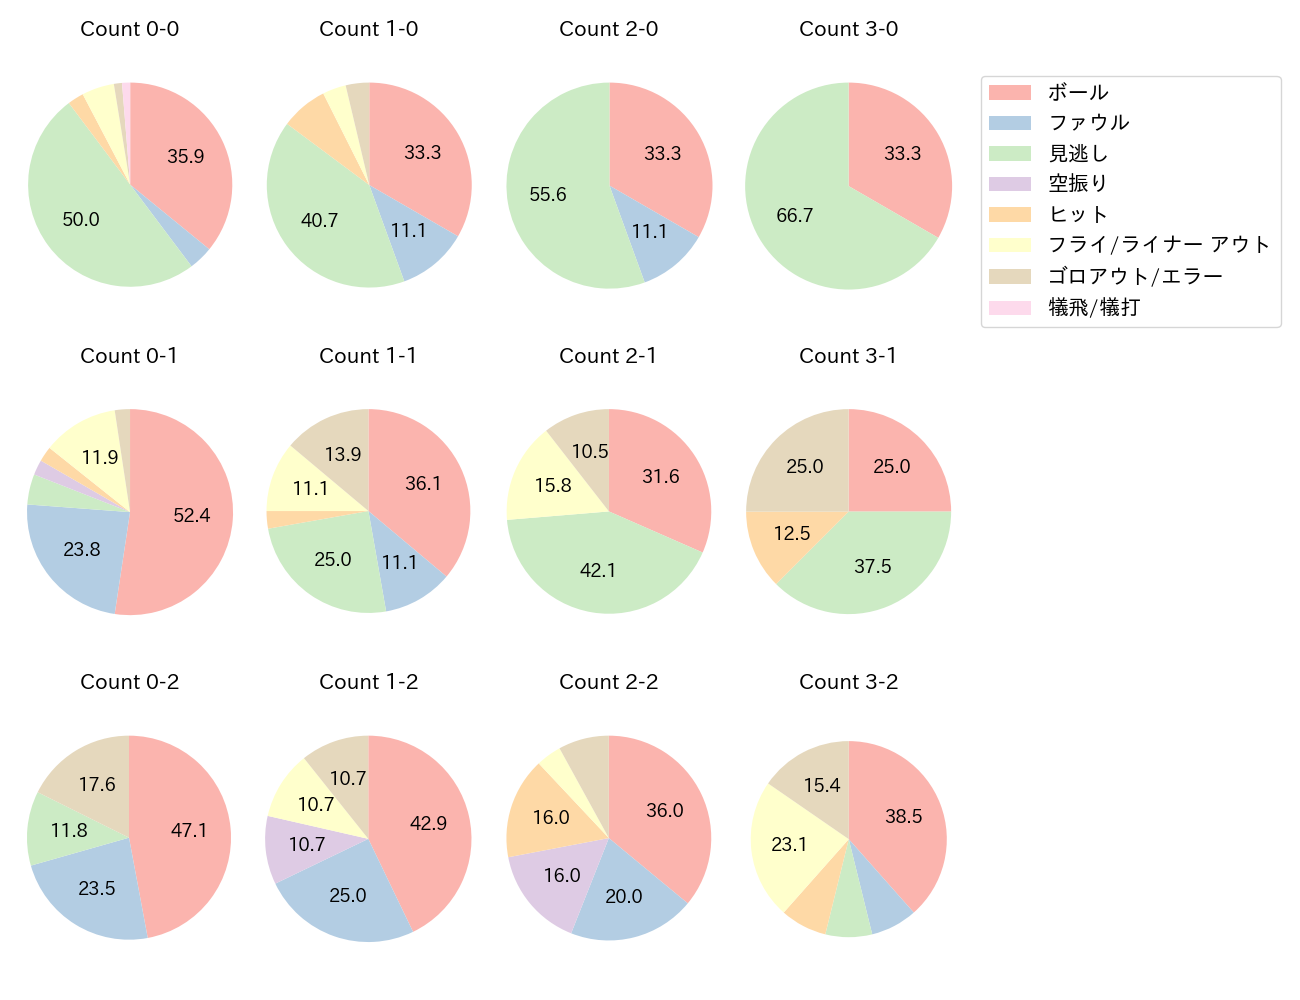 福田 周平の球数分布(2021年10月)